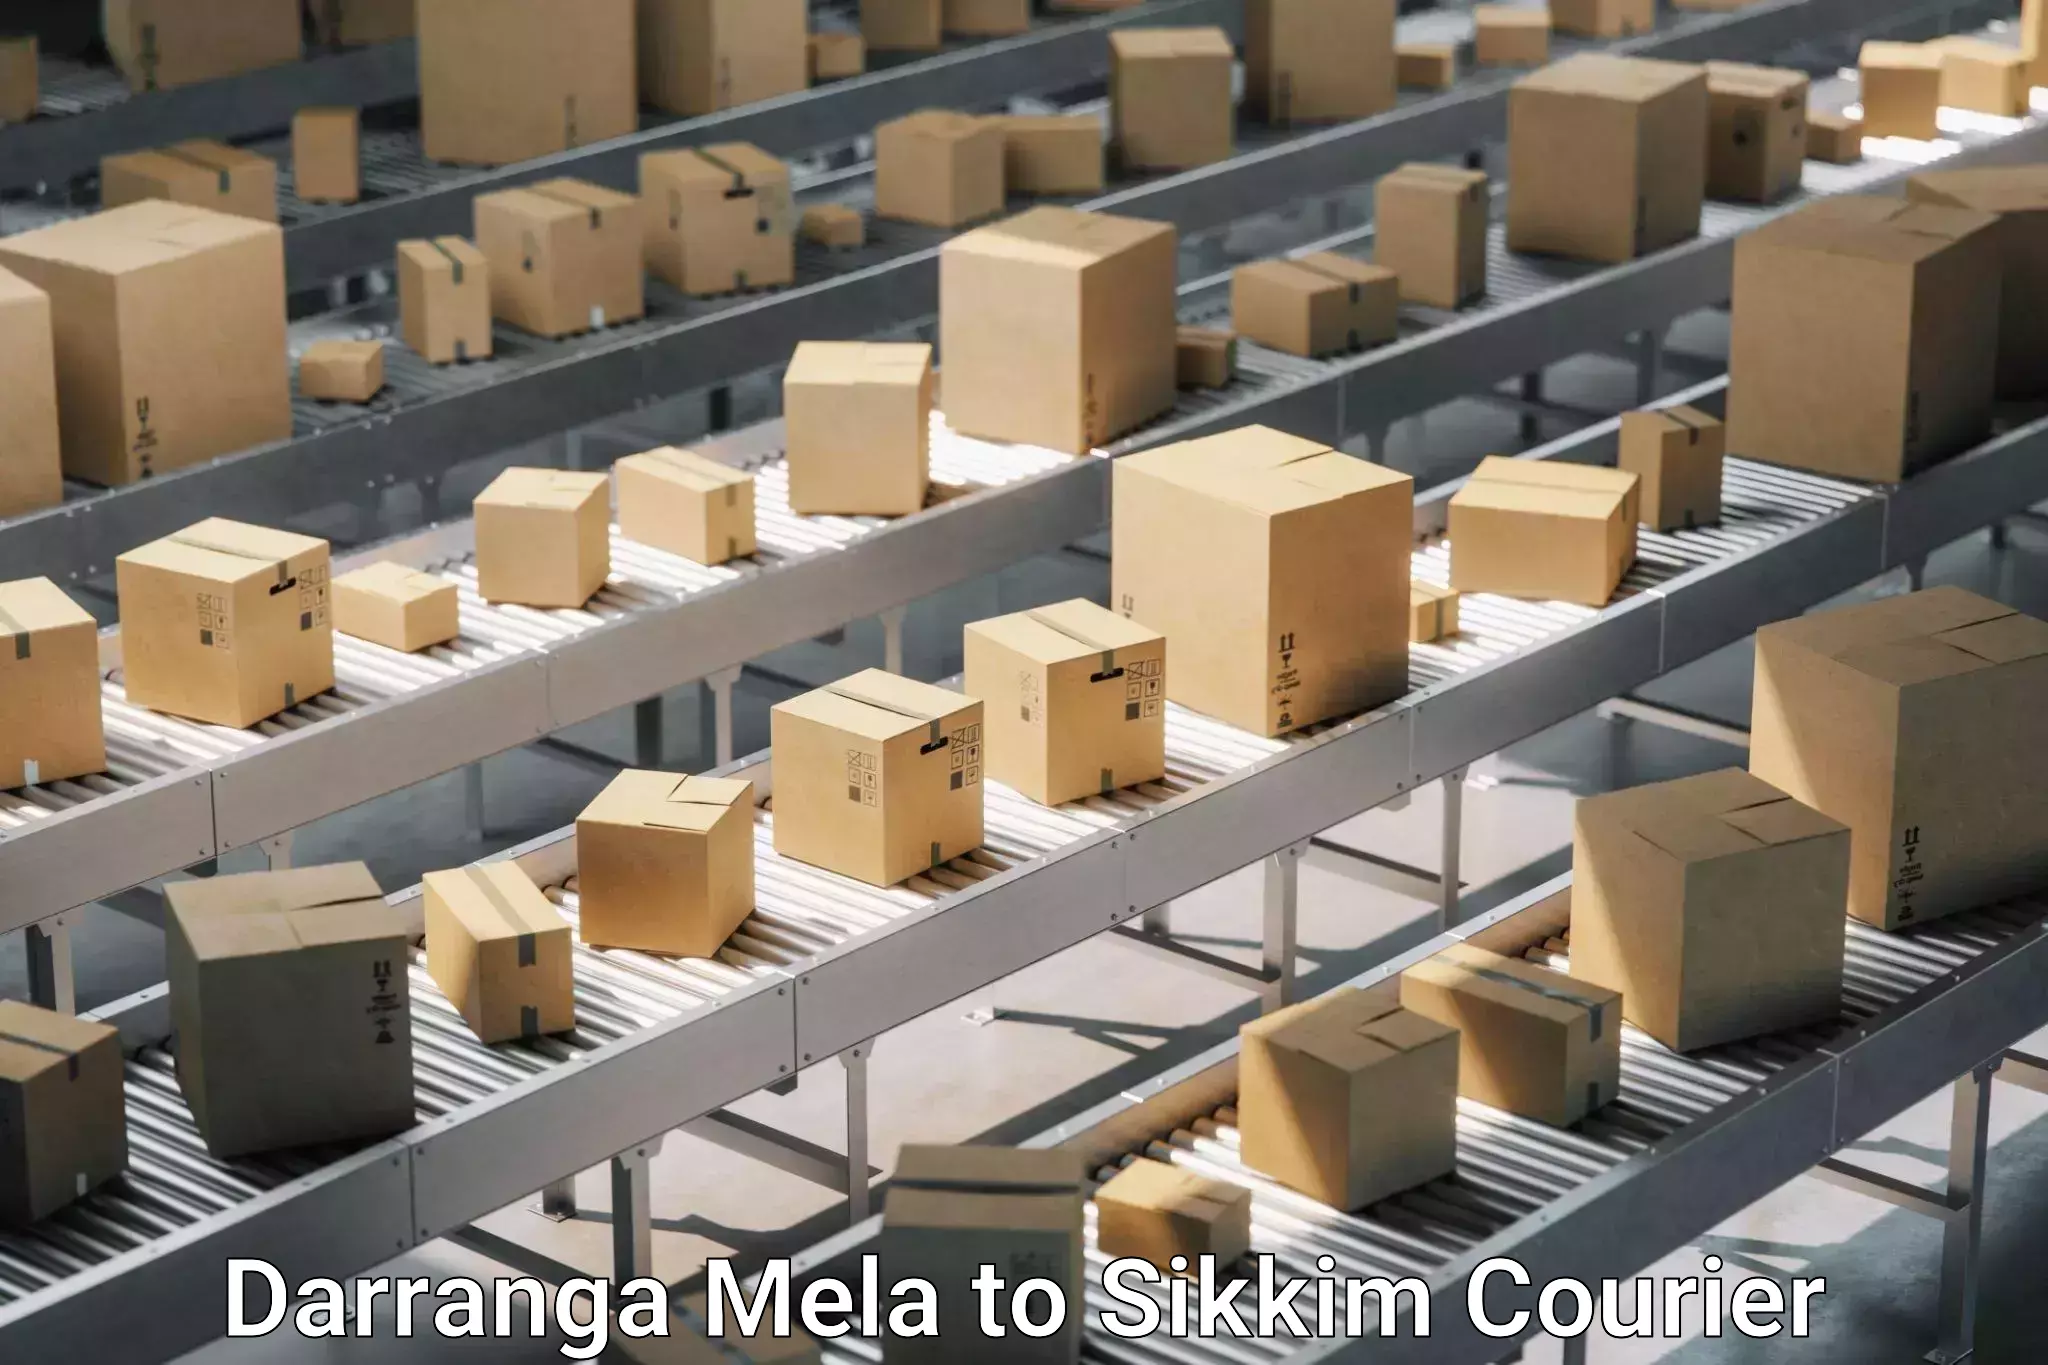 Home goods moving company Darranga Mela to Pelling